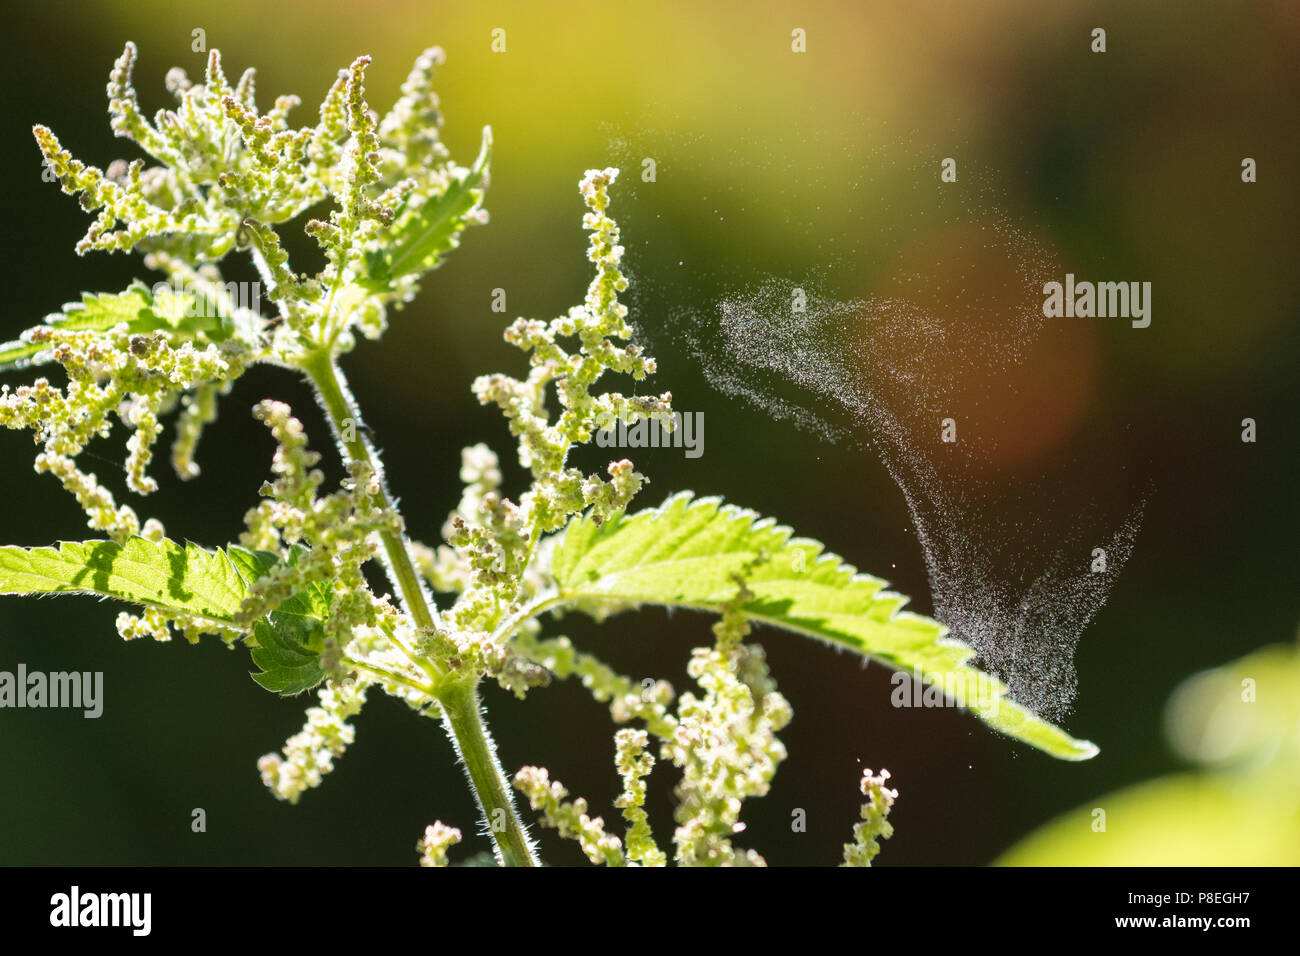 La pollinisation par le vent - la dissémination du pollen par catapulte - ortie (Urtica dioica) jetant pollen sur un jour sec Banque D'Images